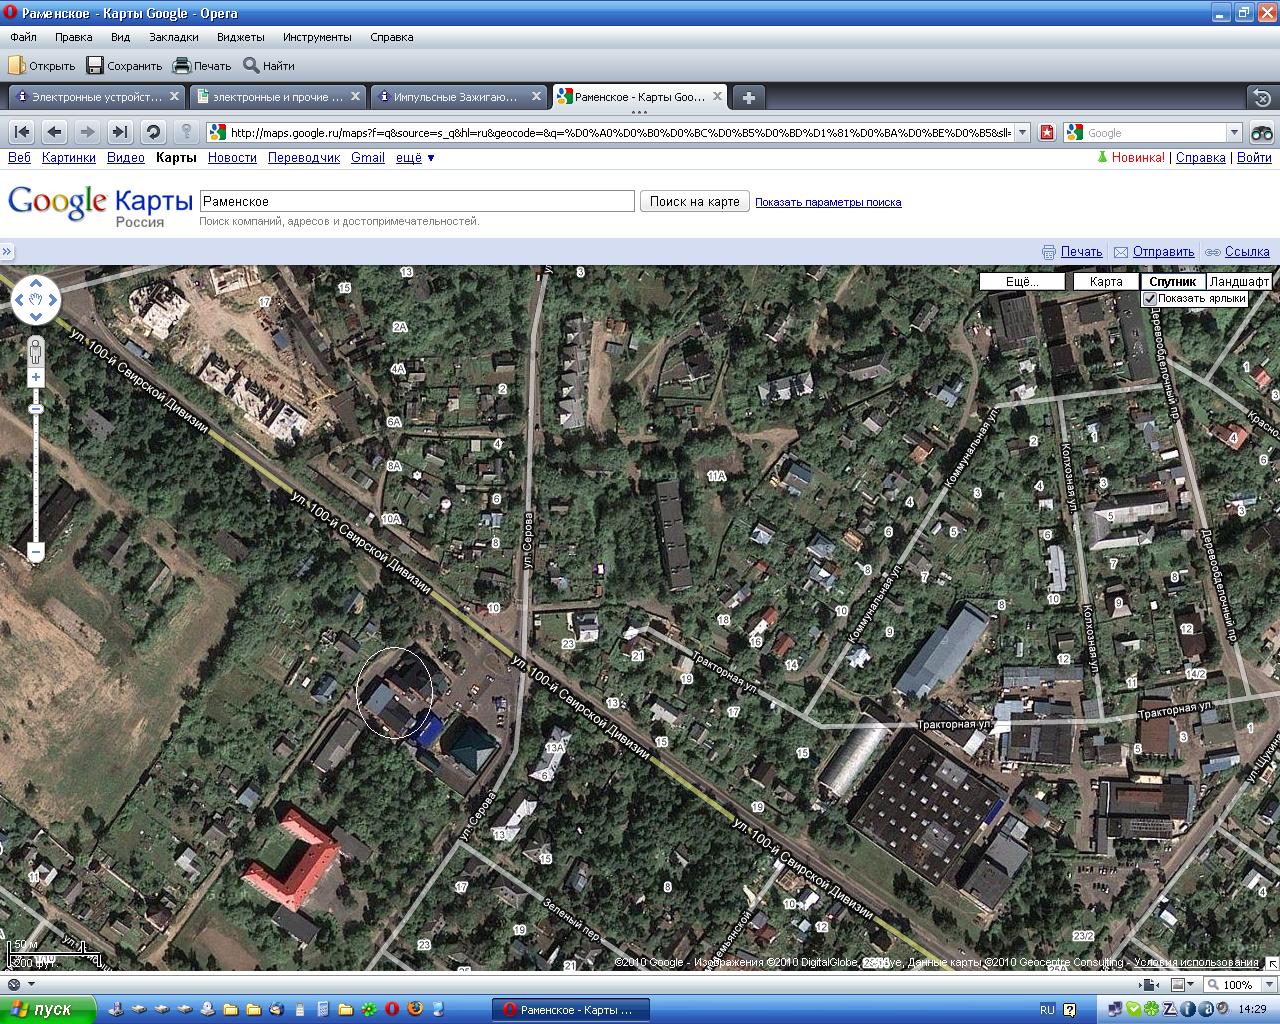 Карта Мапс гугл спутниковая